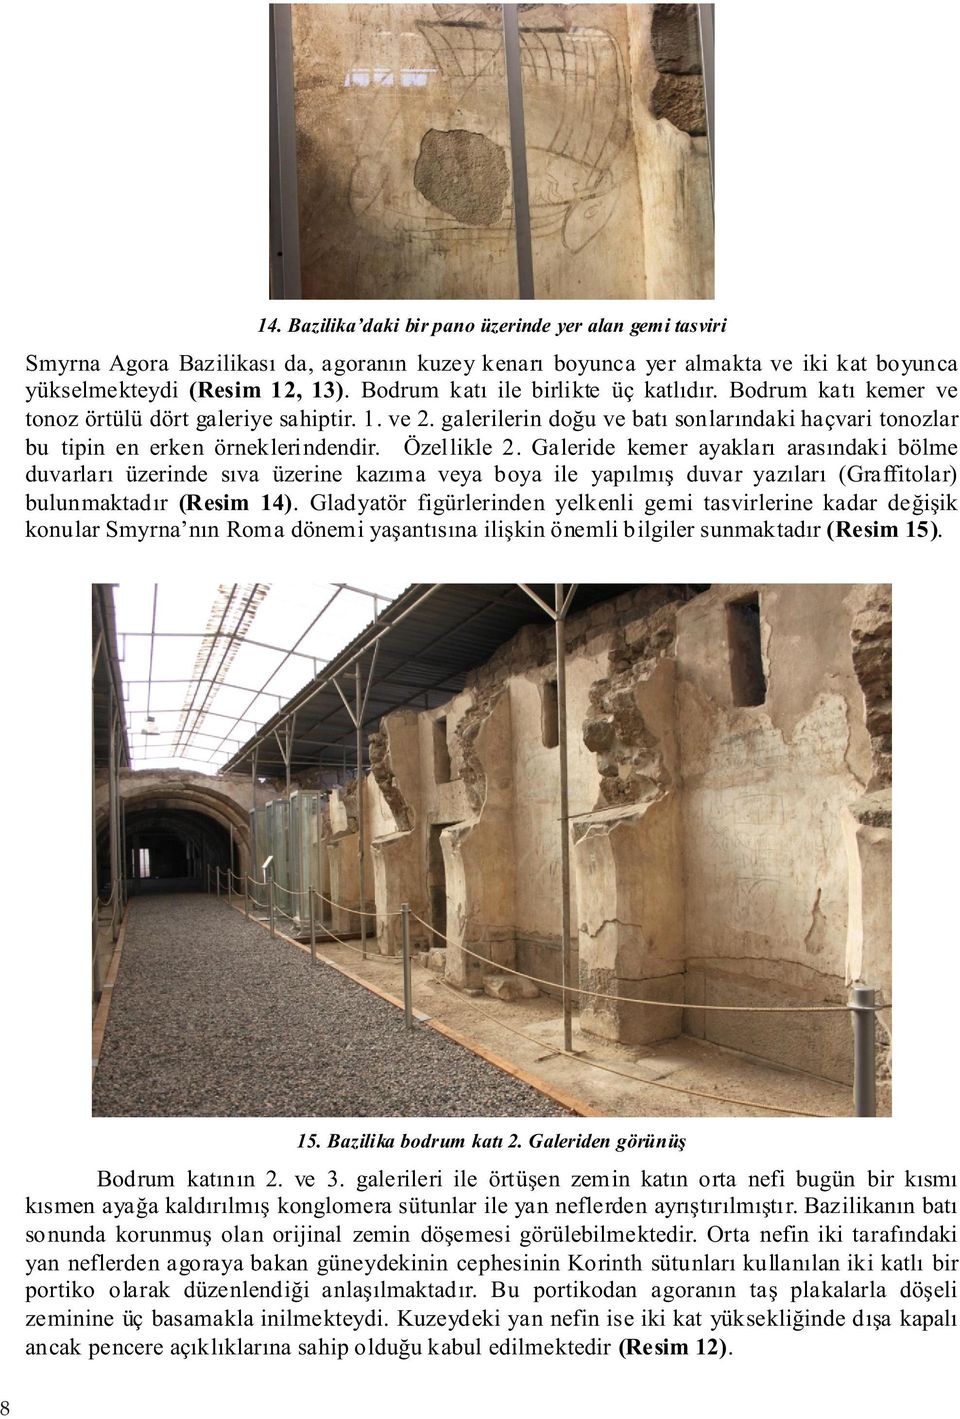 Özellikle 2. Galeride kemer ayakları arasındaki bölme duvarları üzerinde sıva üzerine kazıma veya boya ile yapılmış duvar yazıları (Graffitolar) bulunmaktadır (Resim 14).